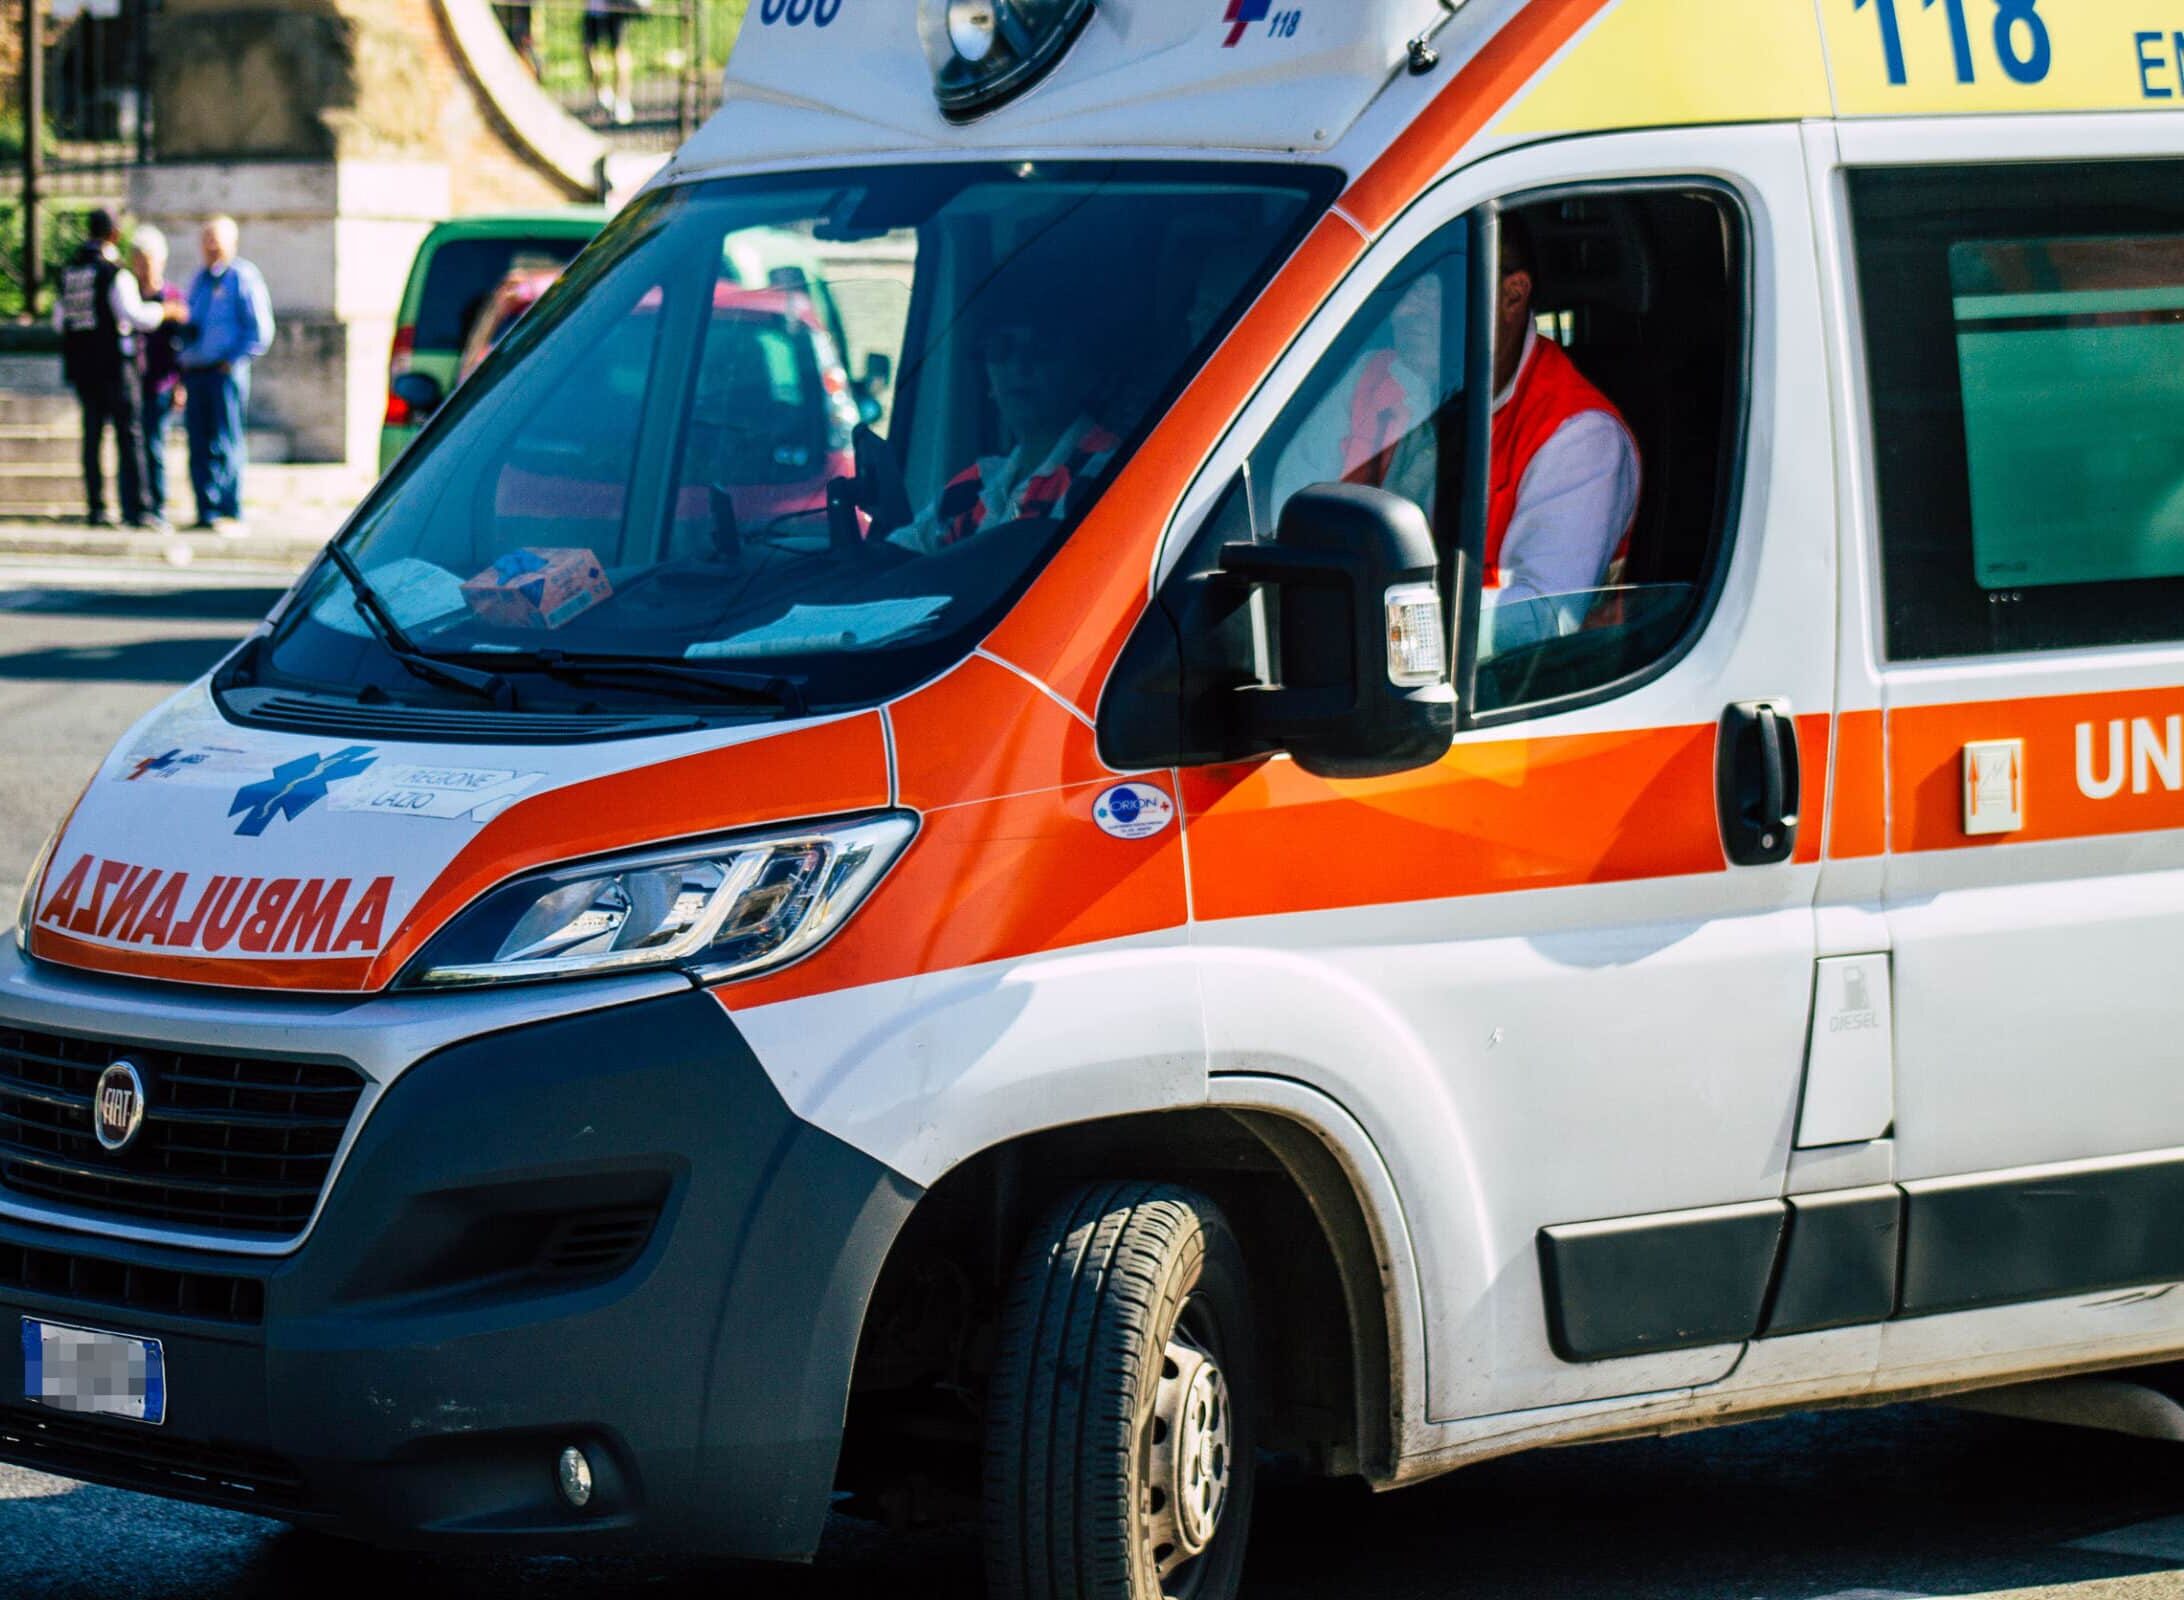 Incidente a Caltanissetta, ambulanza in corsa verso ospedale si scontra con un’auto: 3 feriti